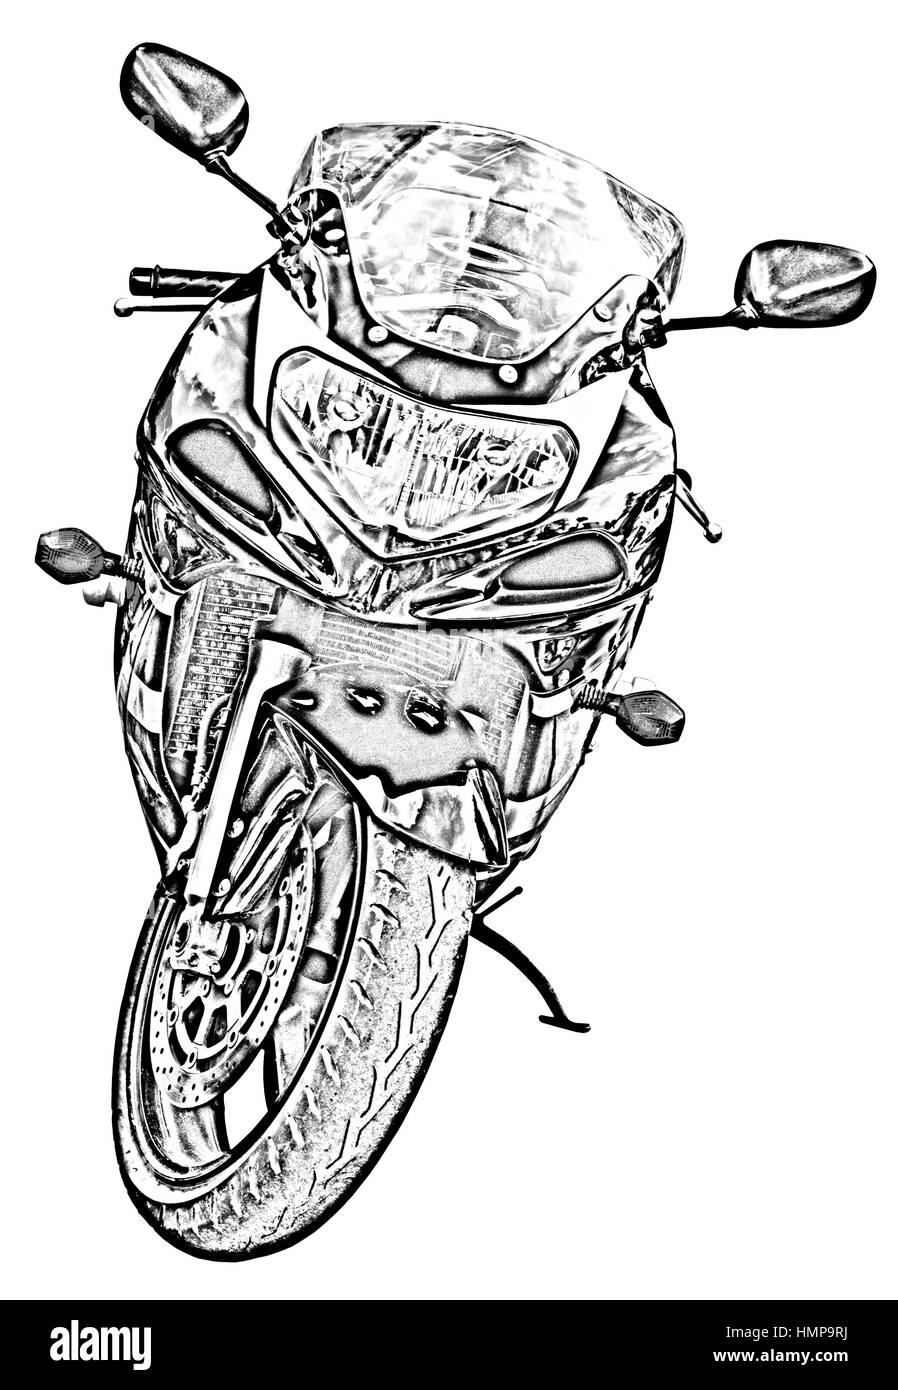 Motorrad-Zeichnung auf weiß Stockfotografie - Alamy